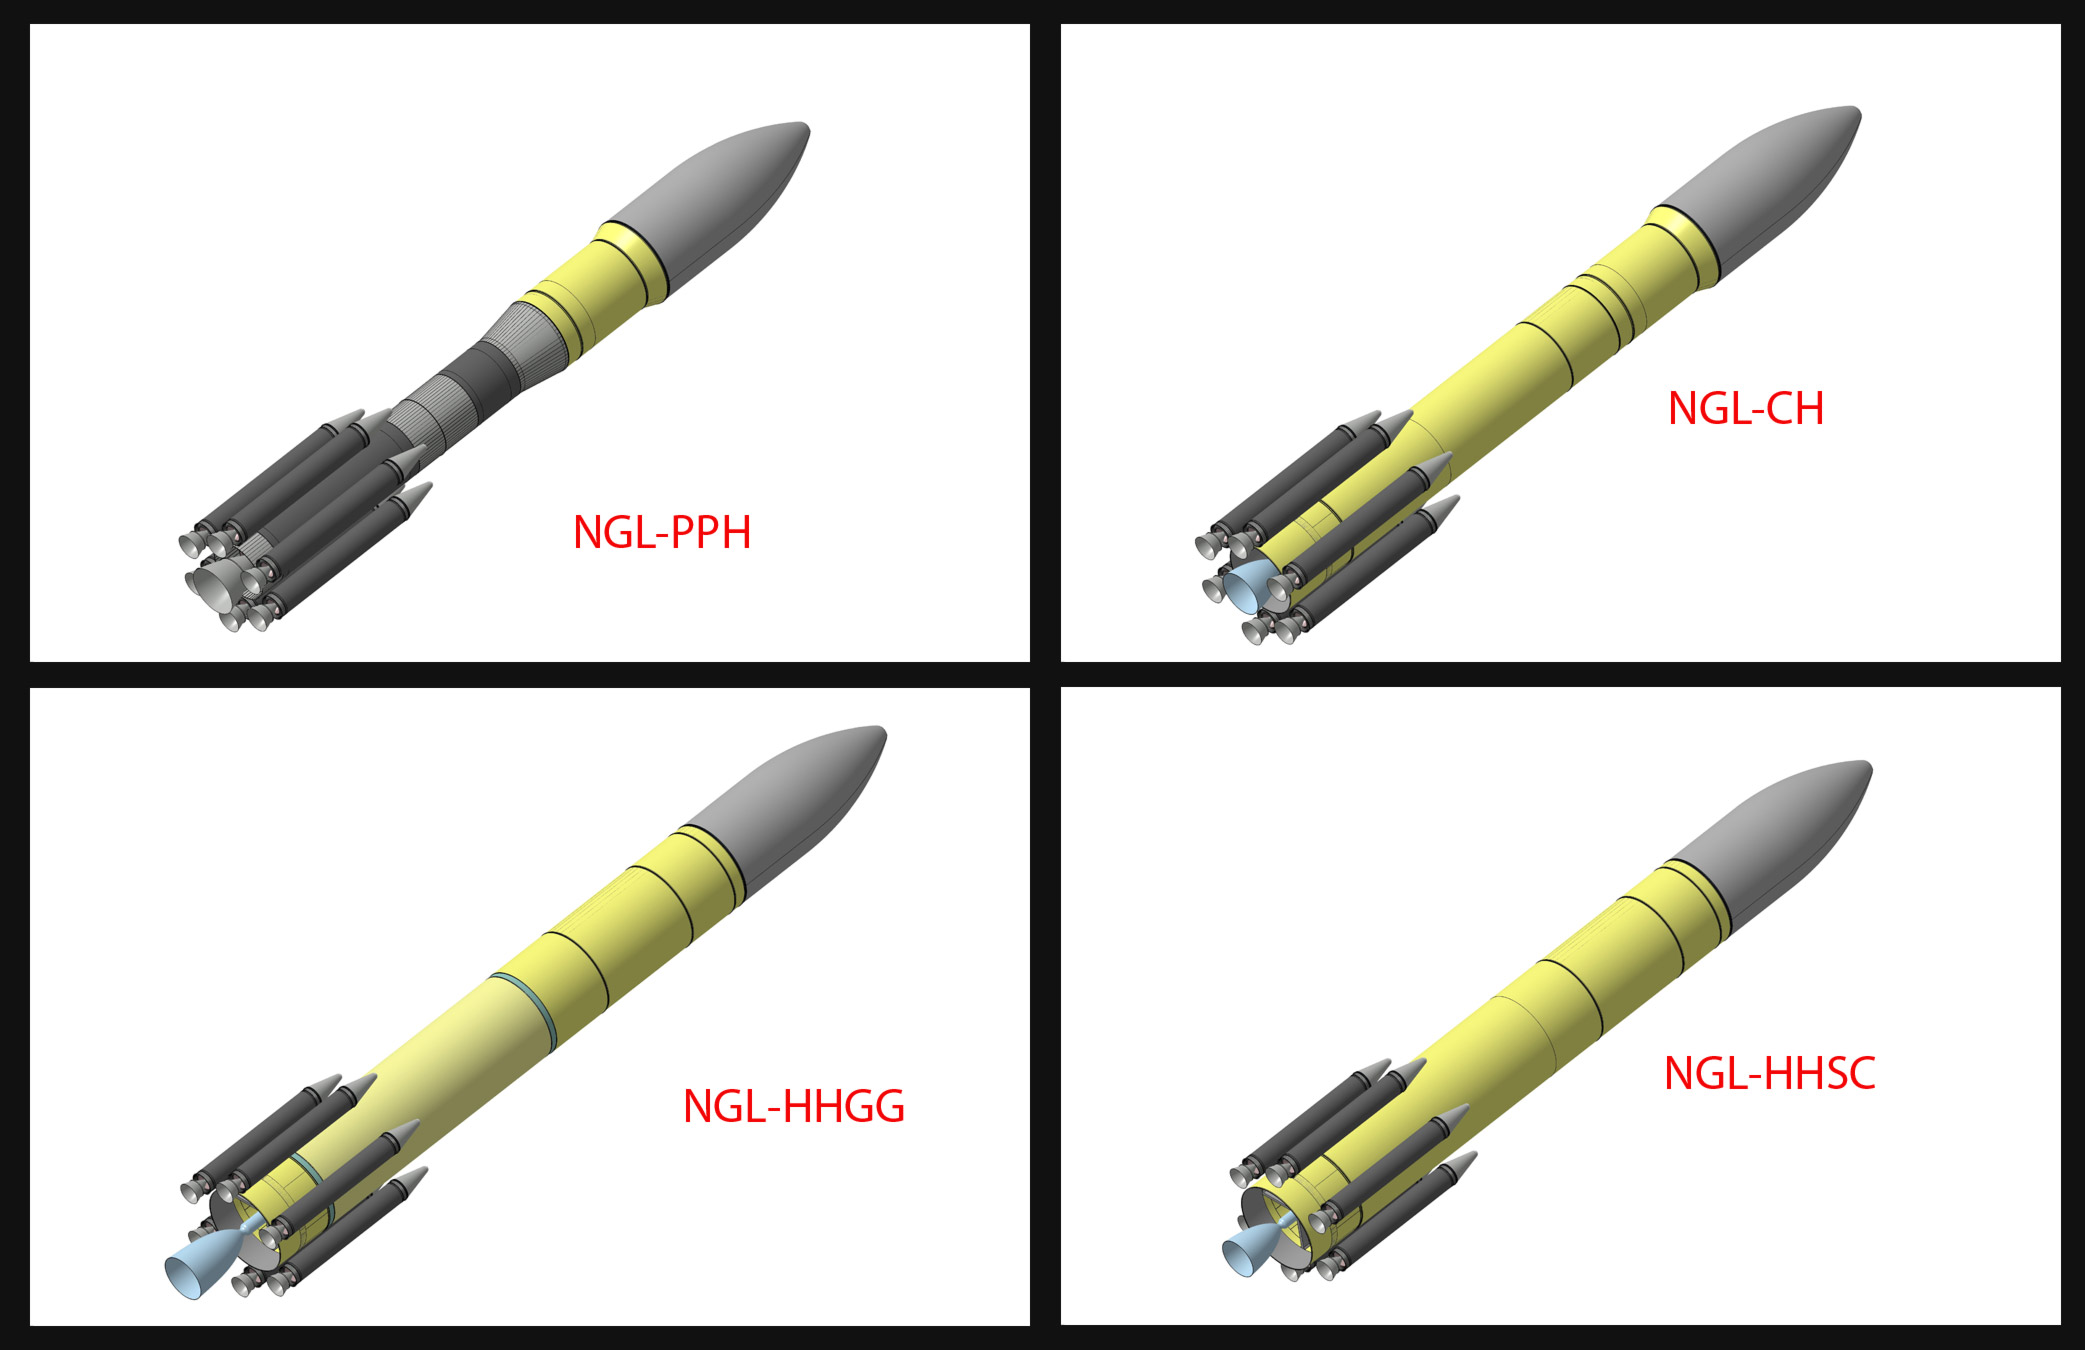 Les quatre concepts de lanceur européen de nouvelle génération qui pourraient succéder à Ariane 5 à l'horizon 2025. © Astrium